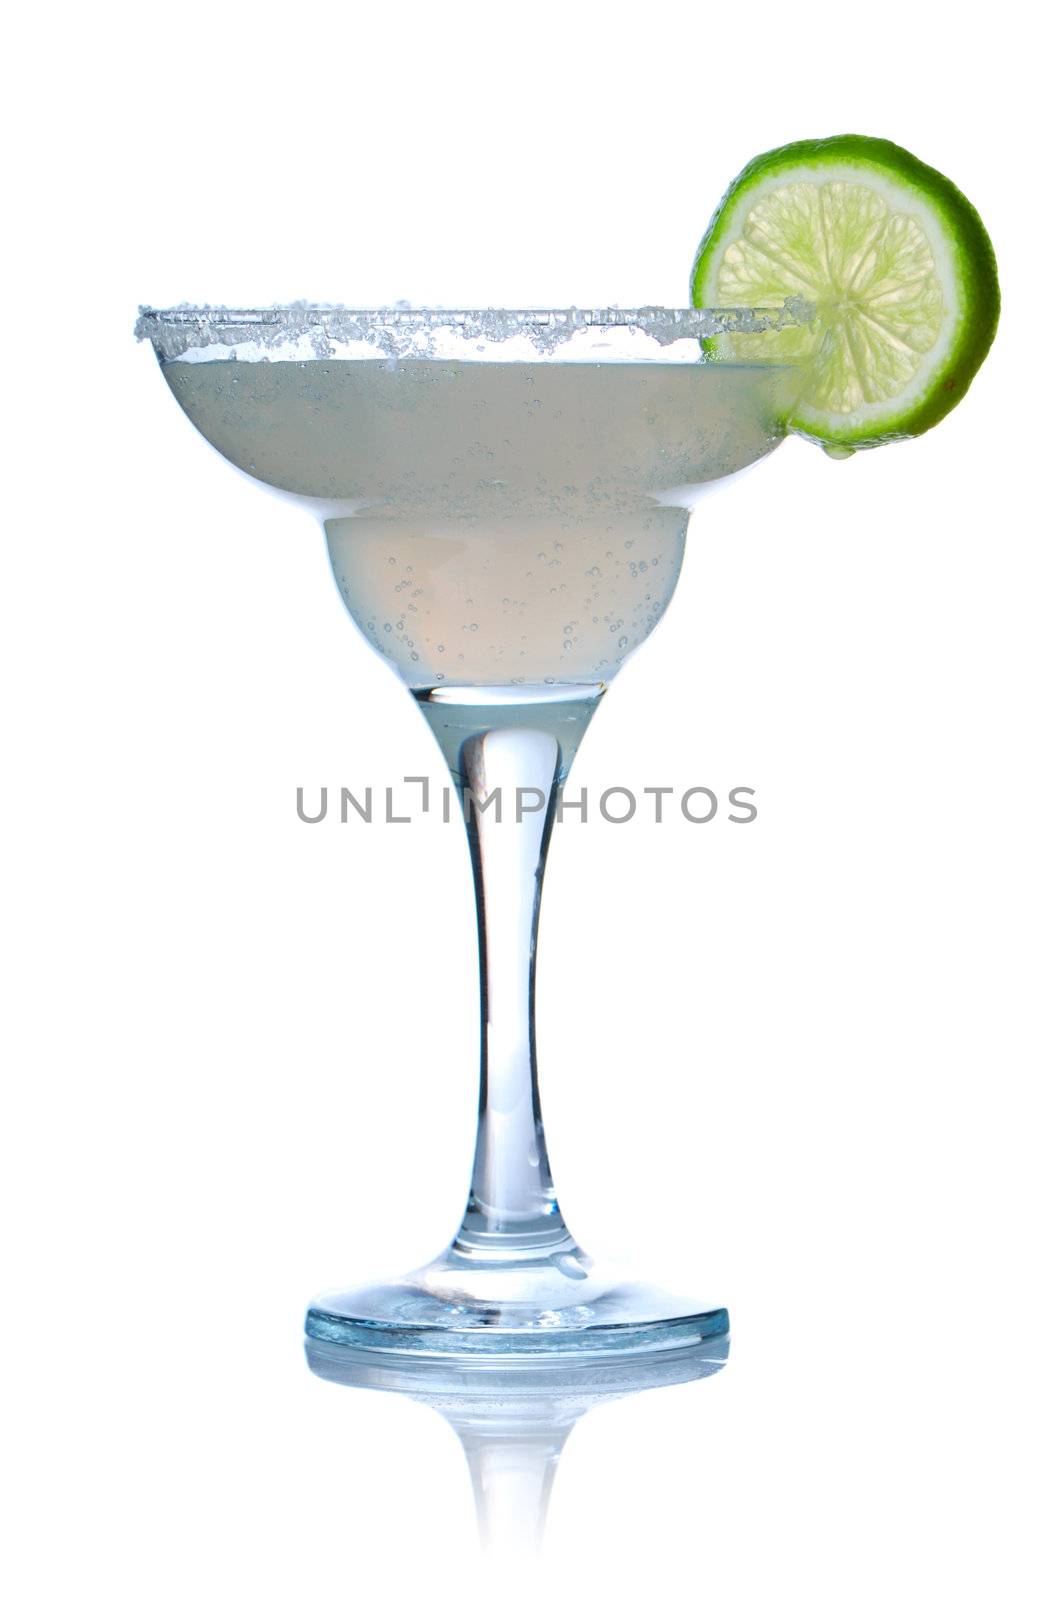 Margarita/Daiquiri cocktail by haveseen